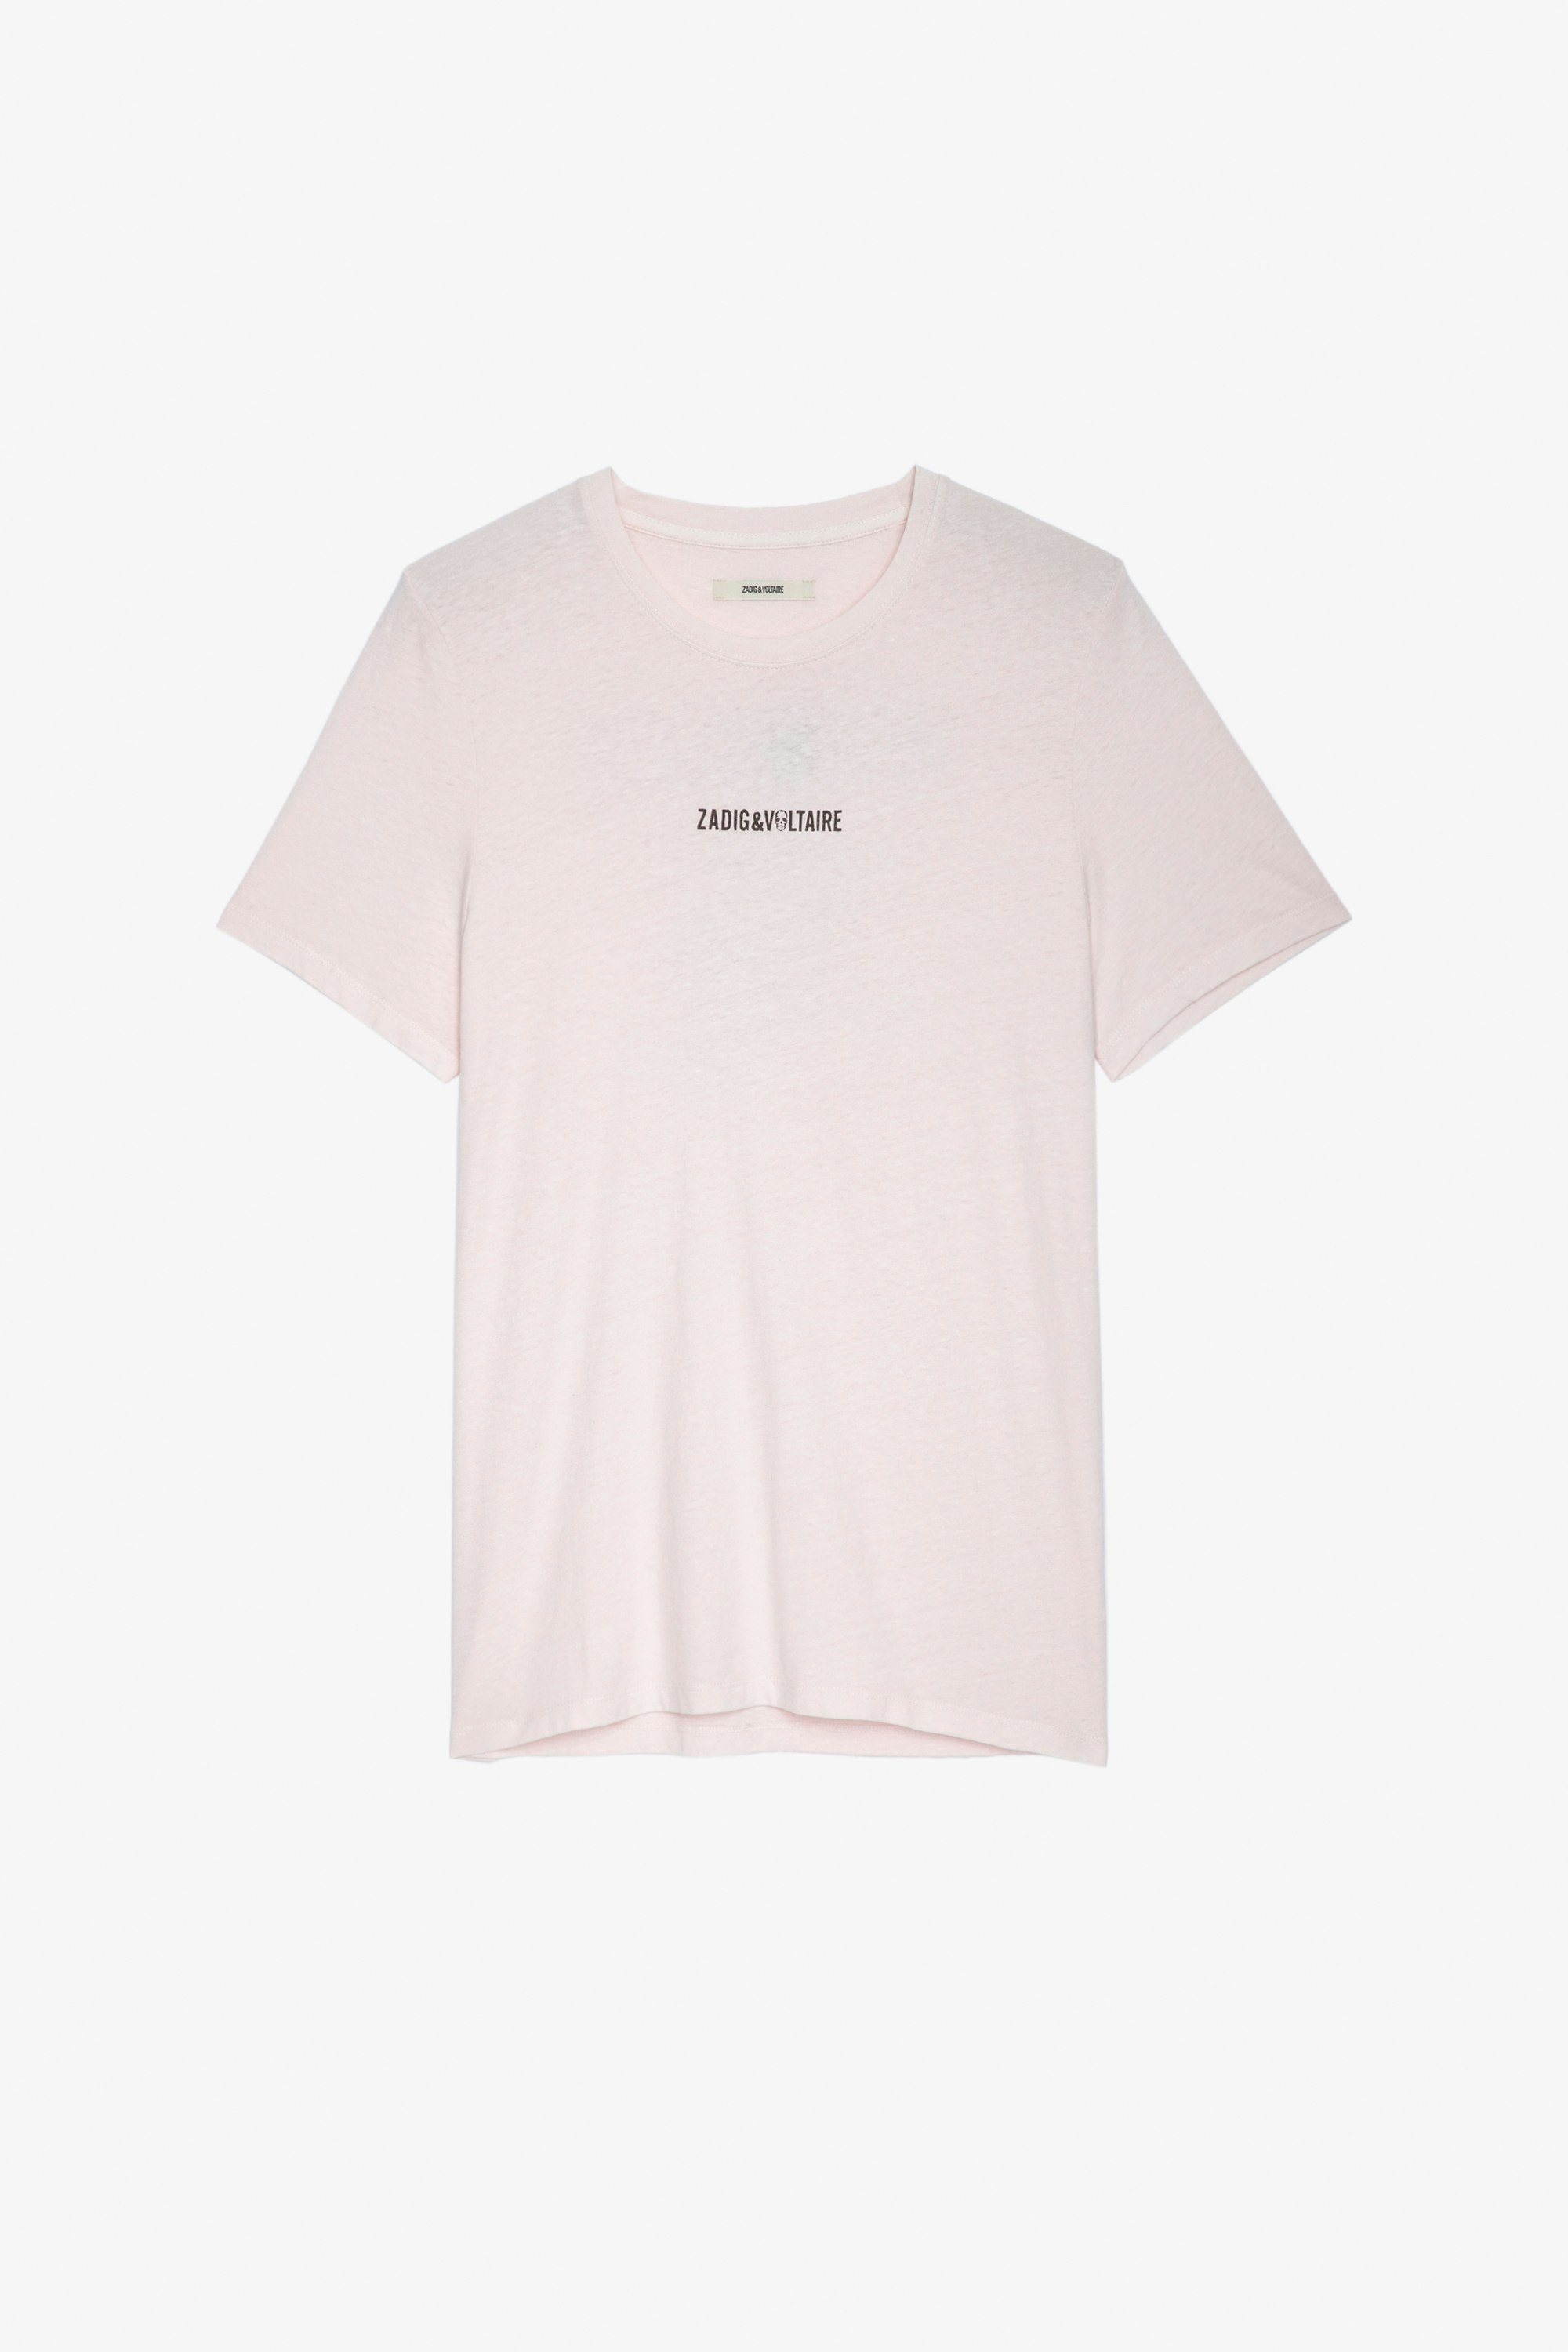 T-shirt Ted T-shirt in cotone rosa chiaro con firma ZV sul davanti e scritta "Hédoniste" sul retro - Uomo